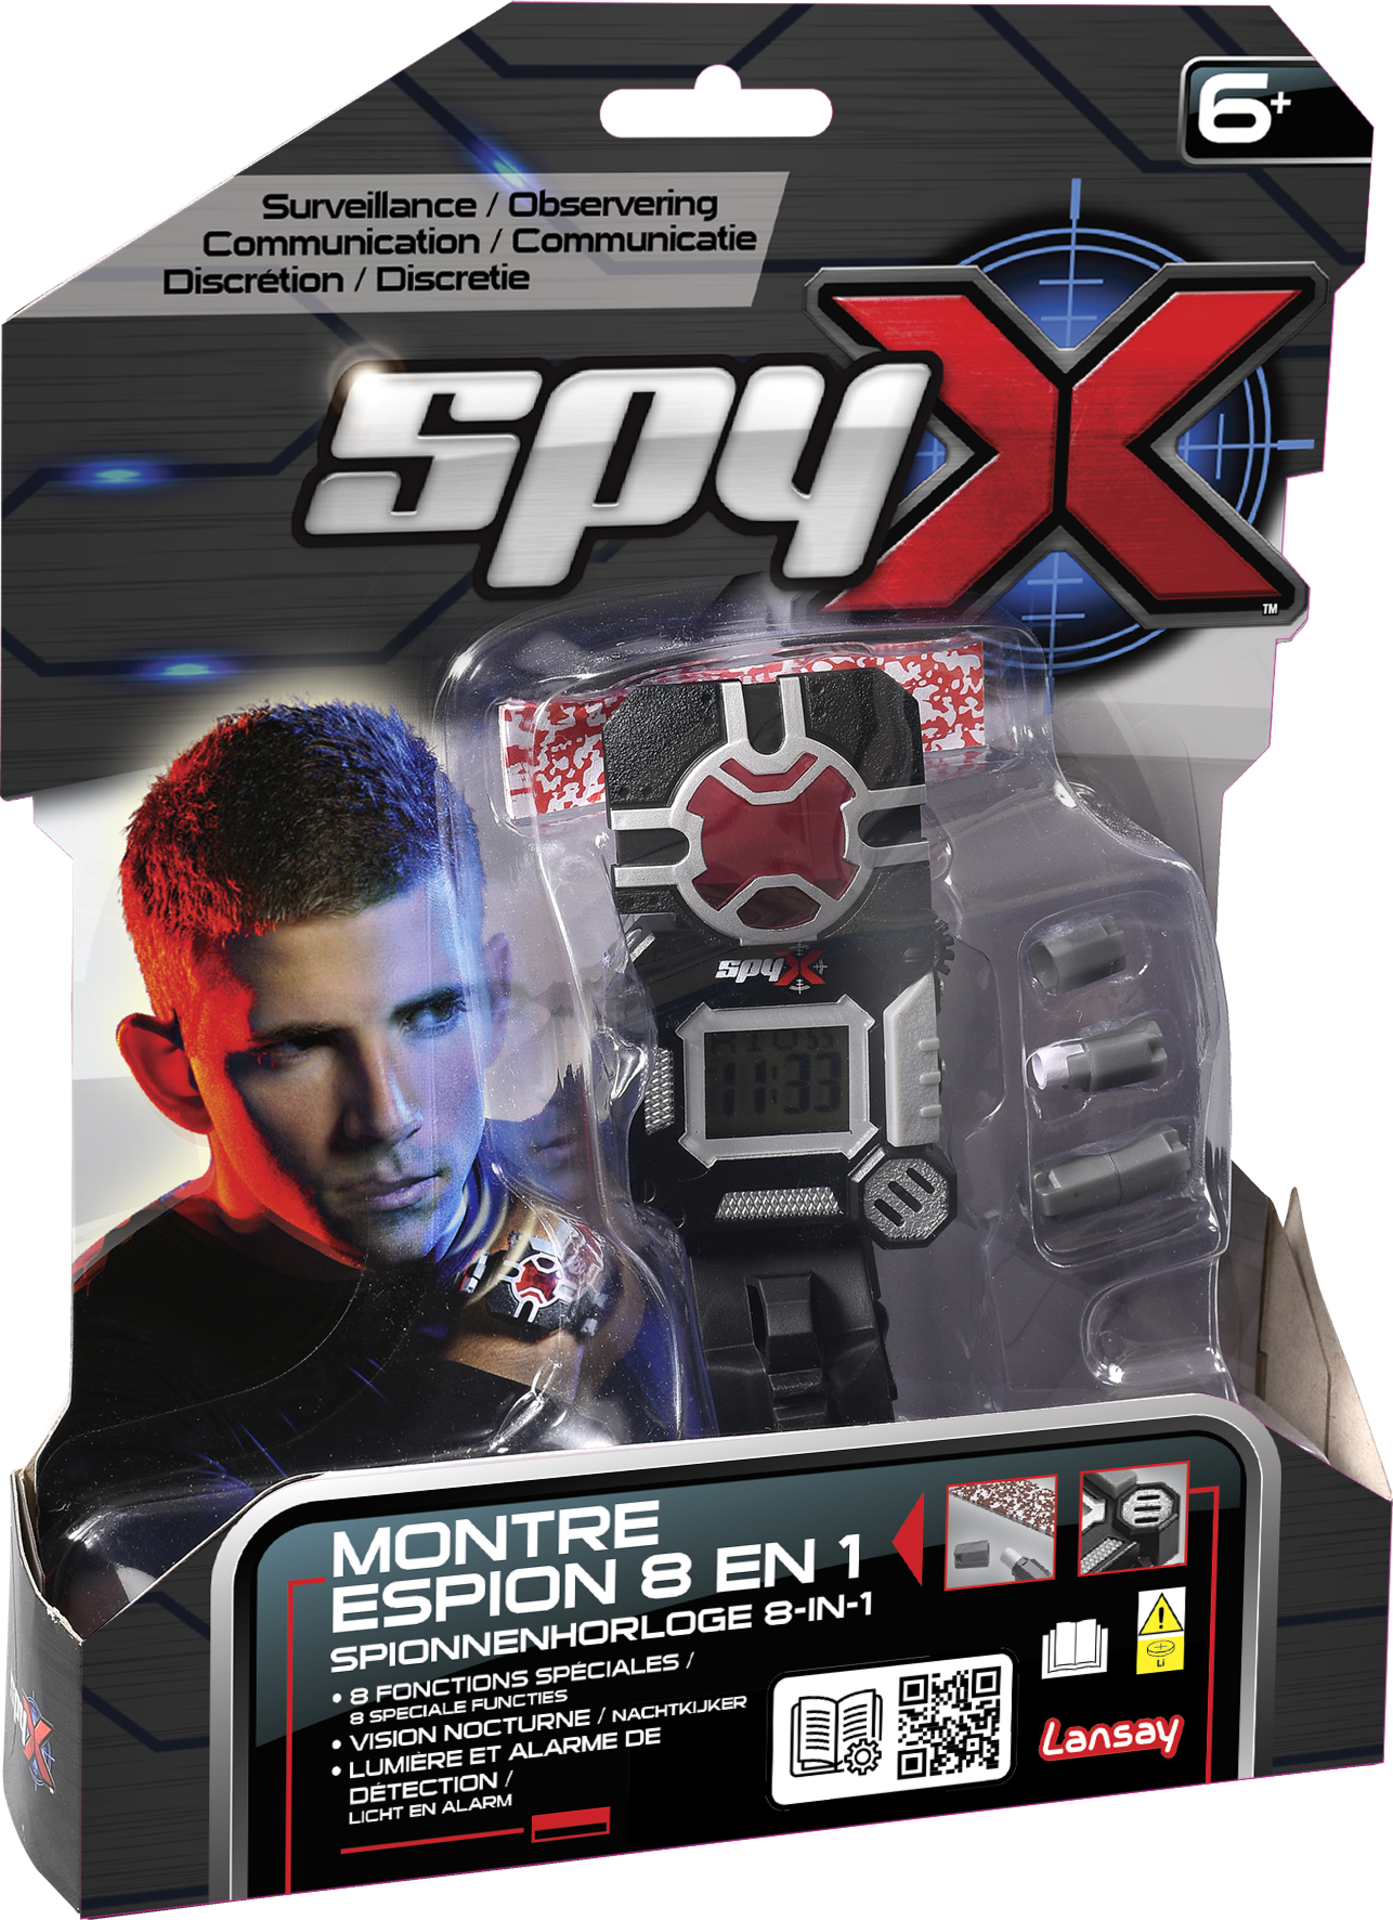 Spy X – Montre Espion 6 En 1 - Jouet & Accessoires d'Espion